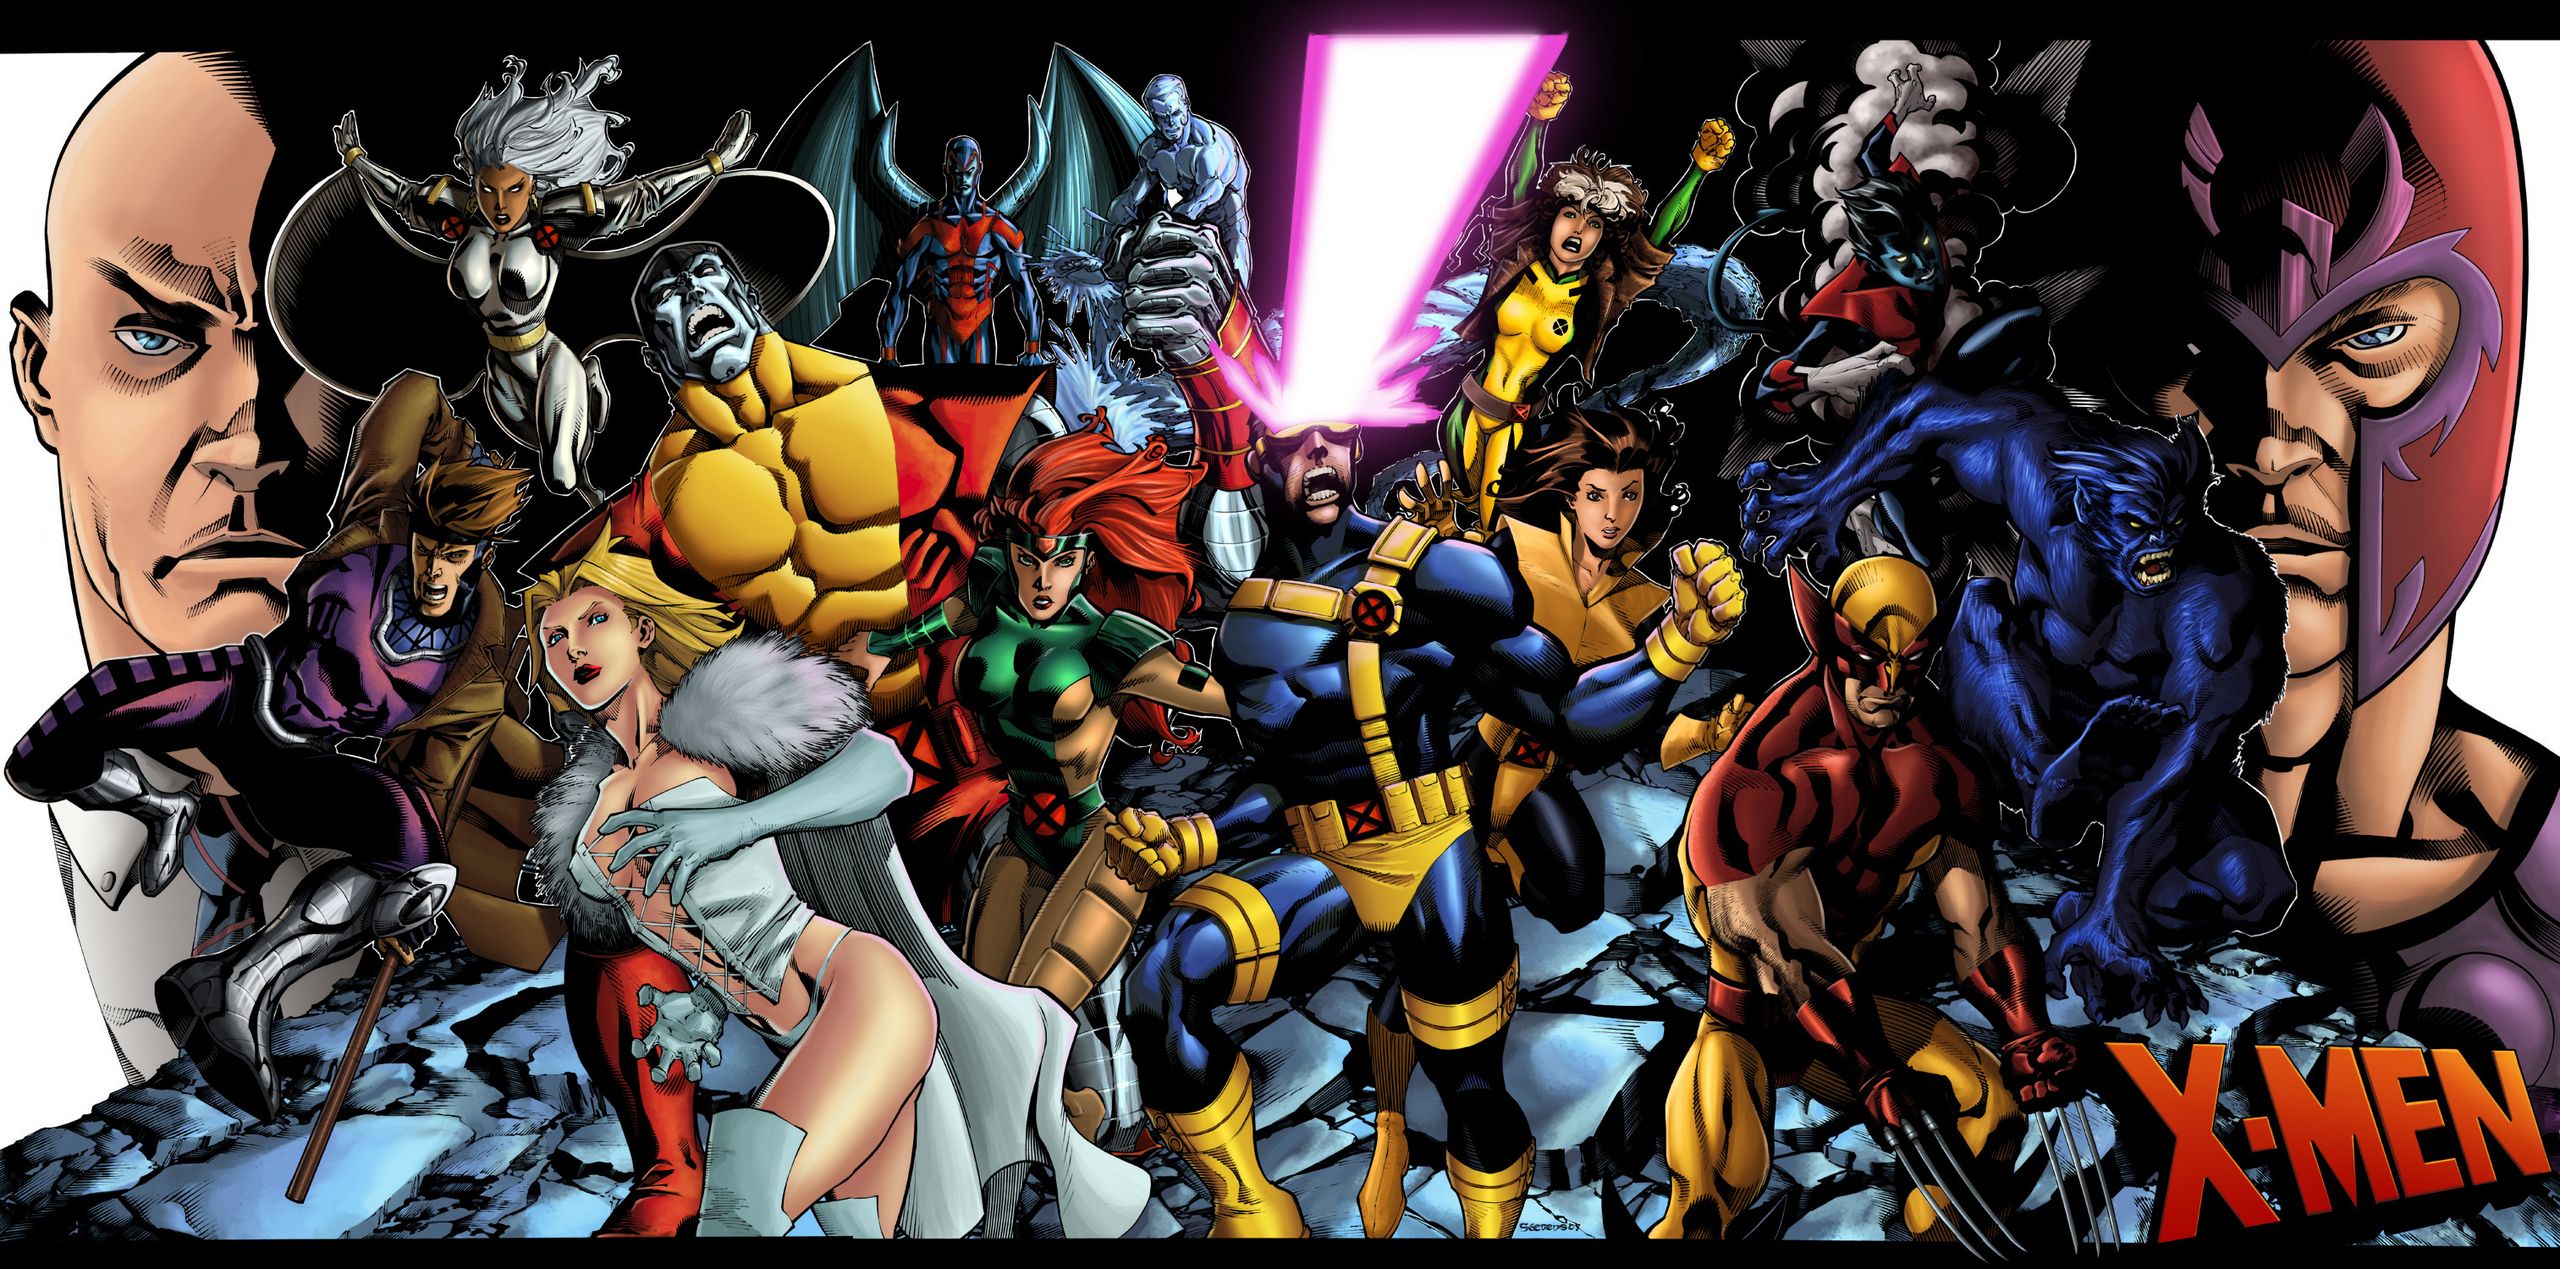 X Men Background. X Men Wallpaper, Avengers Vs. X Men Wallpaper And Beast X Men Wallpaper